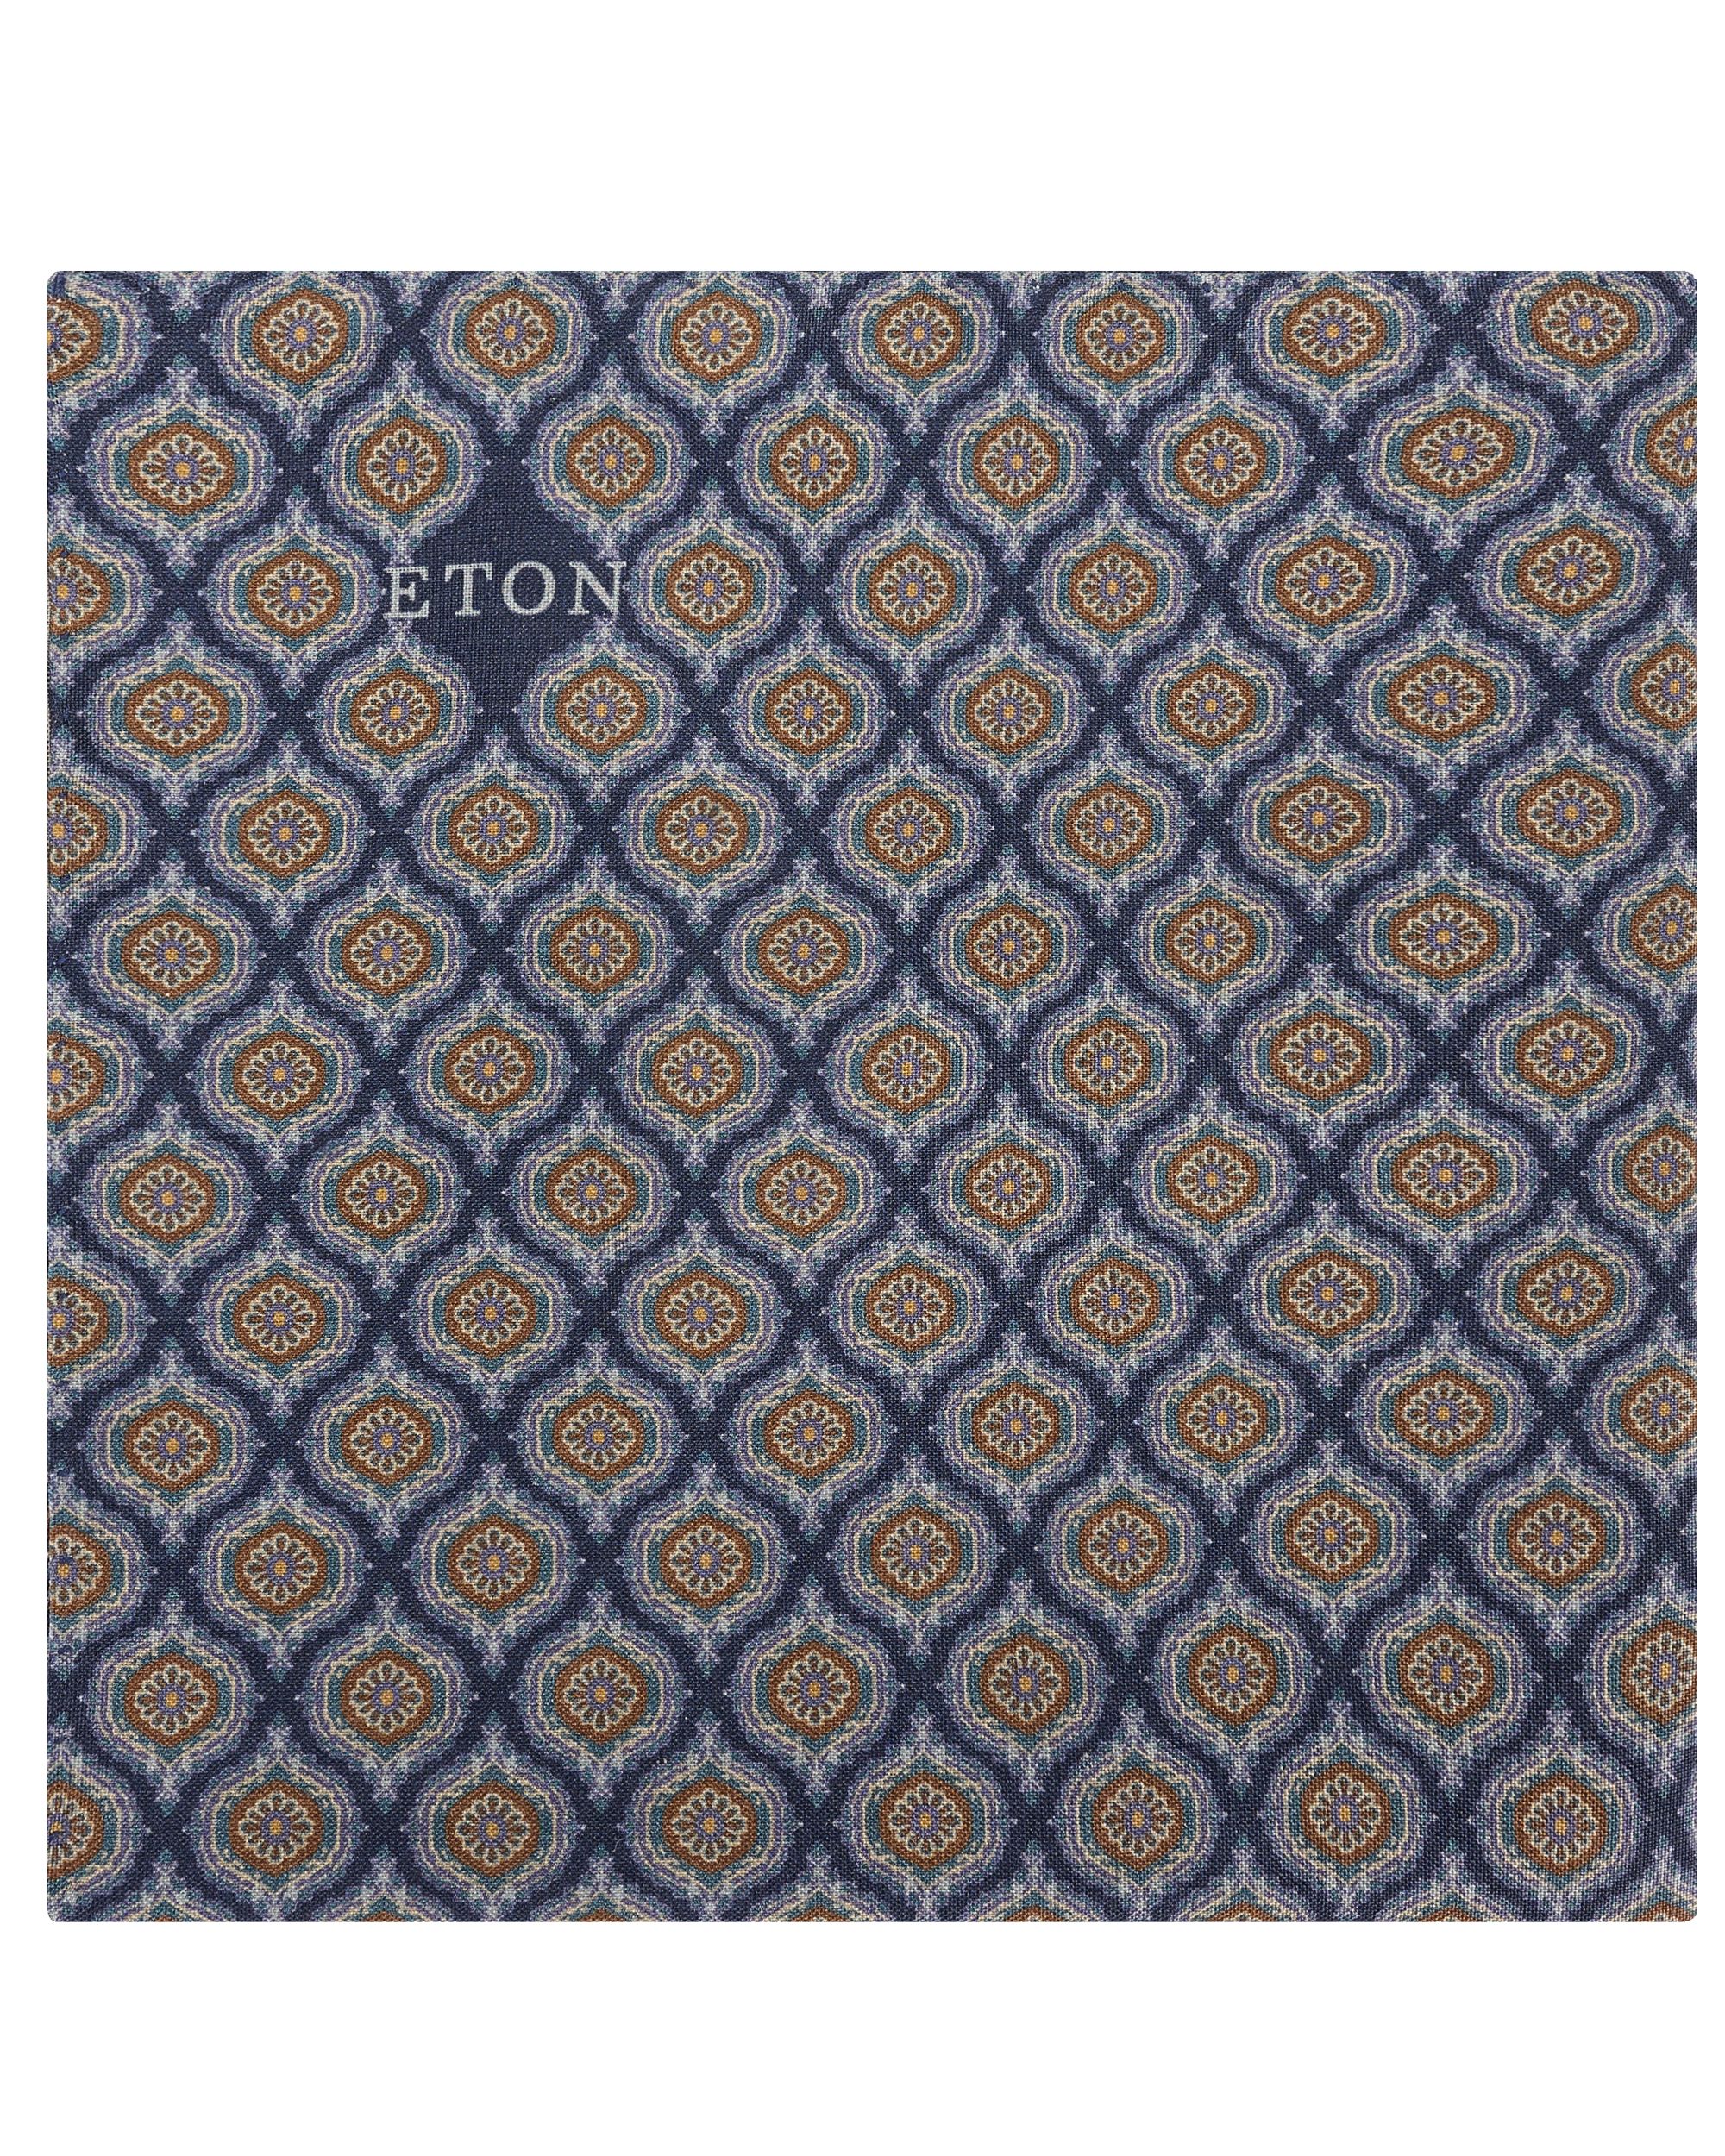 ETON Medallion Fuji Silk Pochet Donker blauw 095612-001-0